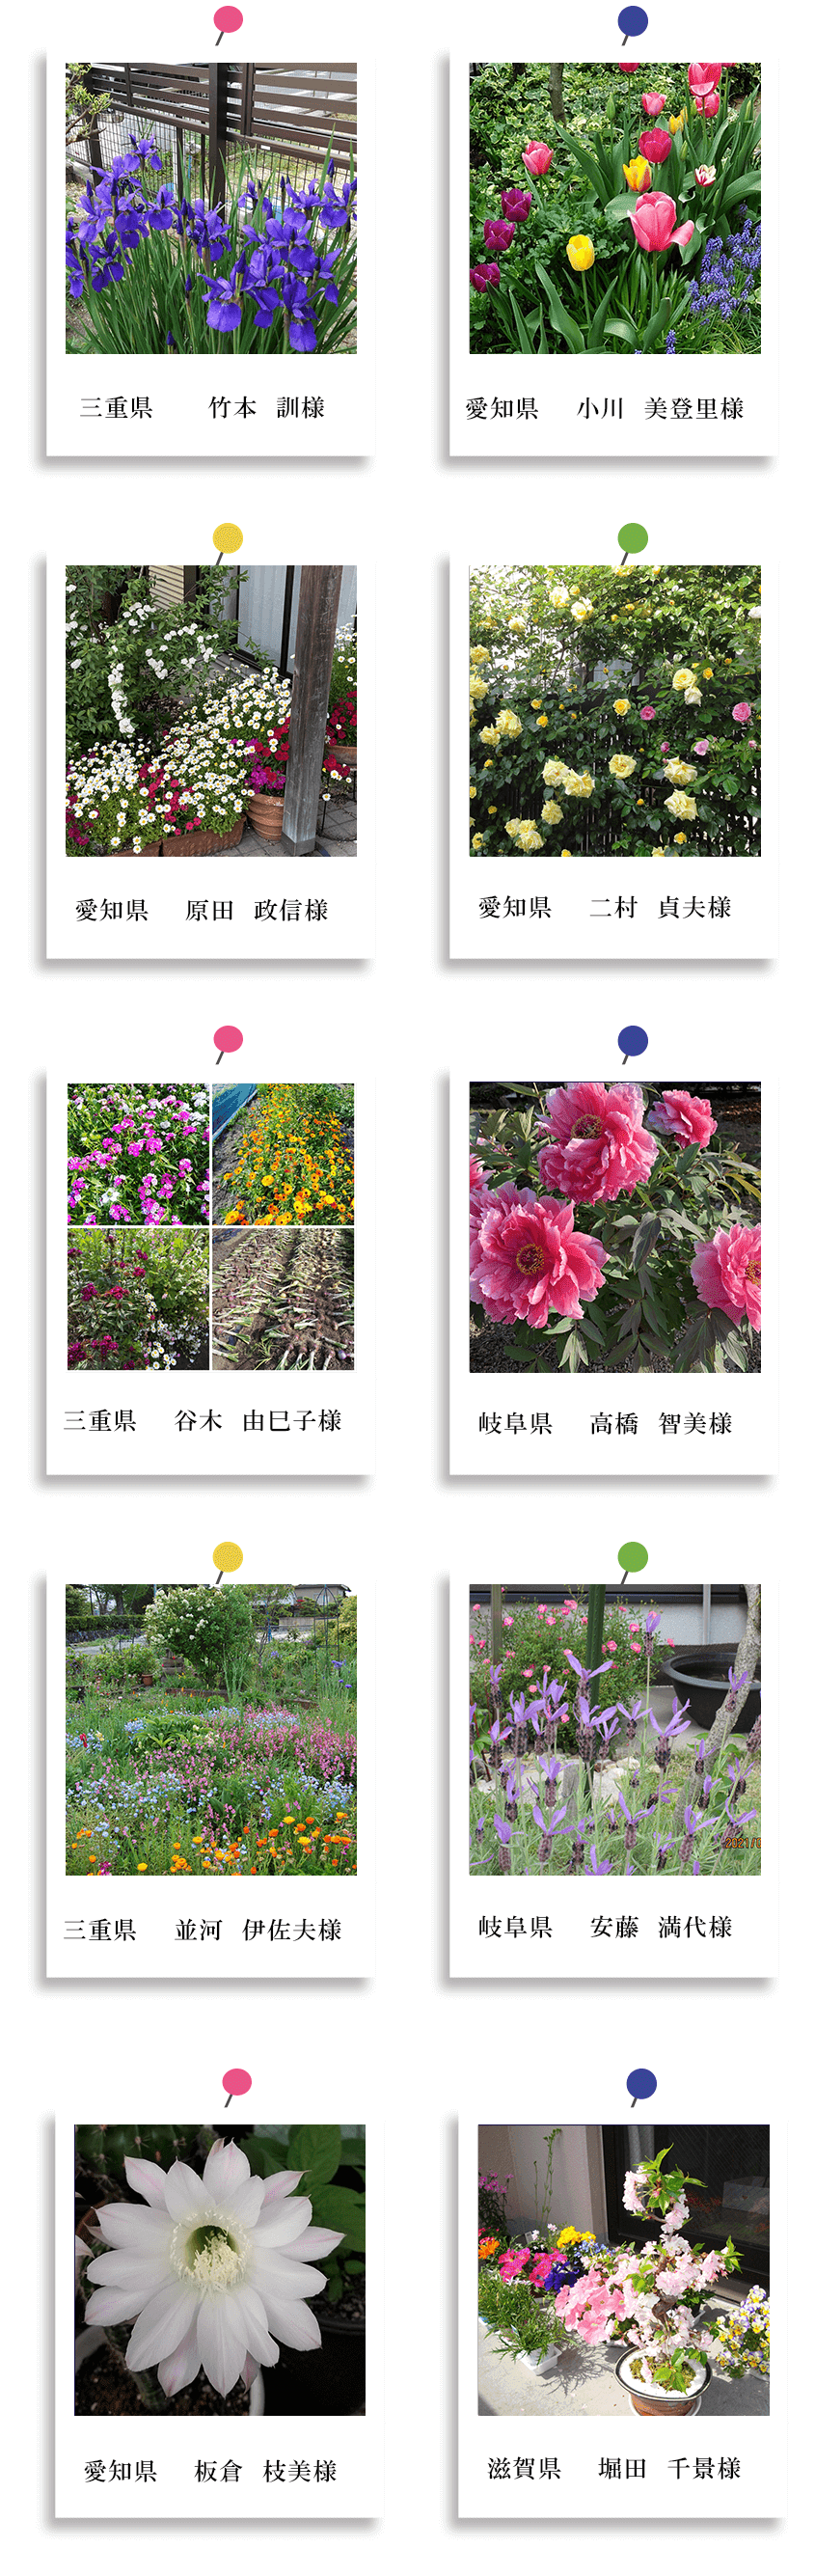 中日新聞社主催　自慢のお庭・花壇・畑写真当選者発表